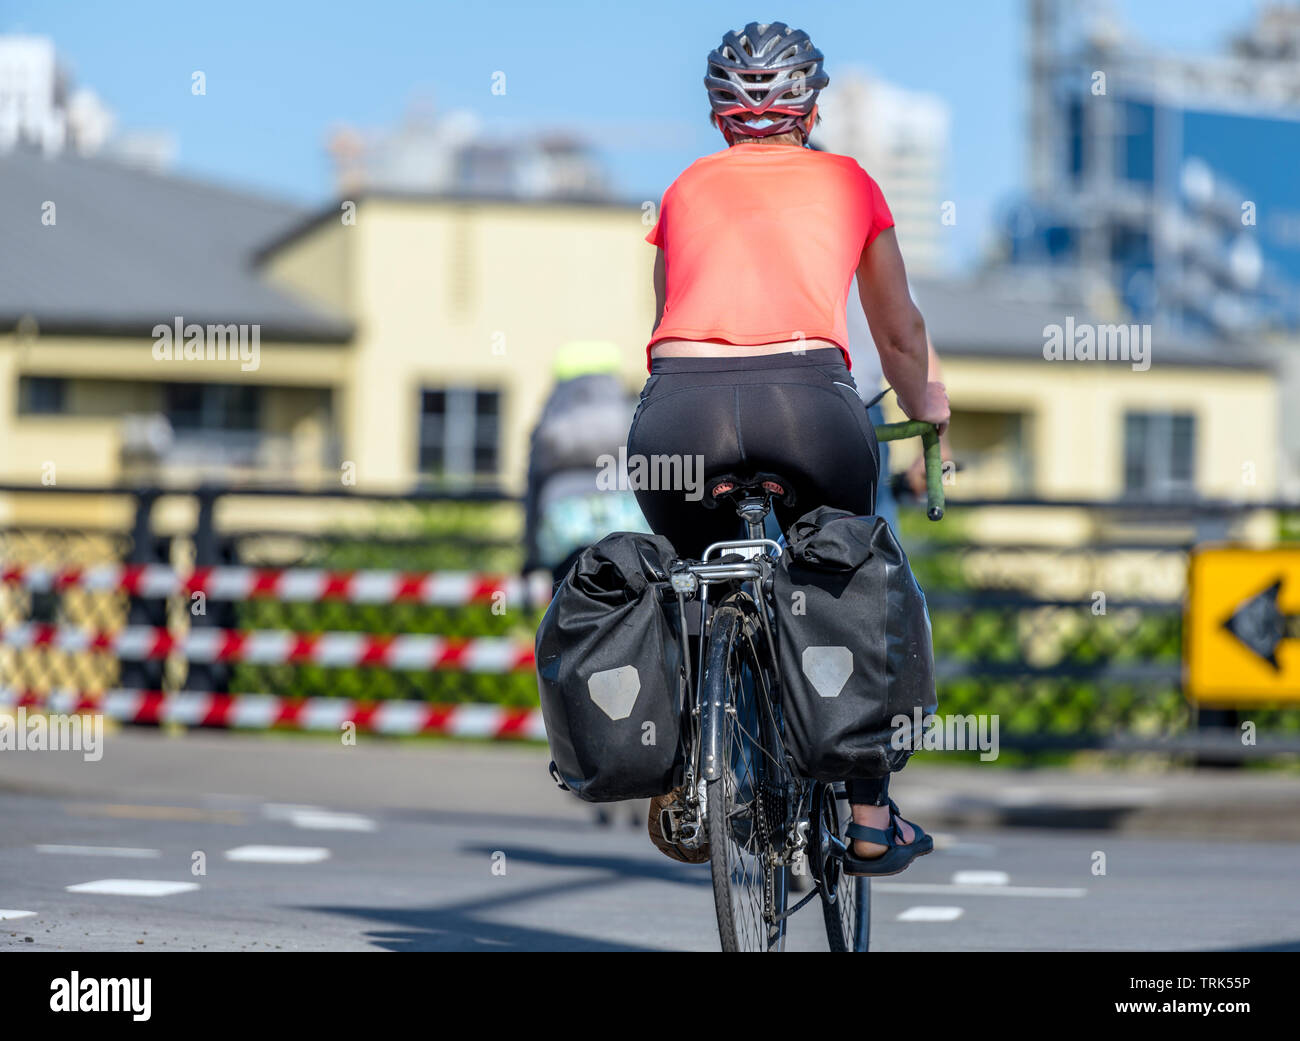 Une superbe femme dans les vêtements de sport cycliste casque et traverse  le carrefour sur une bicyclette, préférant une manière active de détente et  l'aide à garder la sienne Photo Stock -